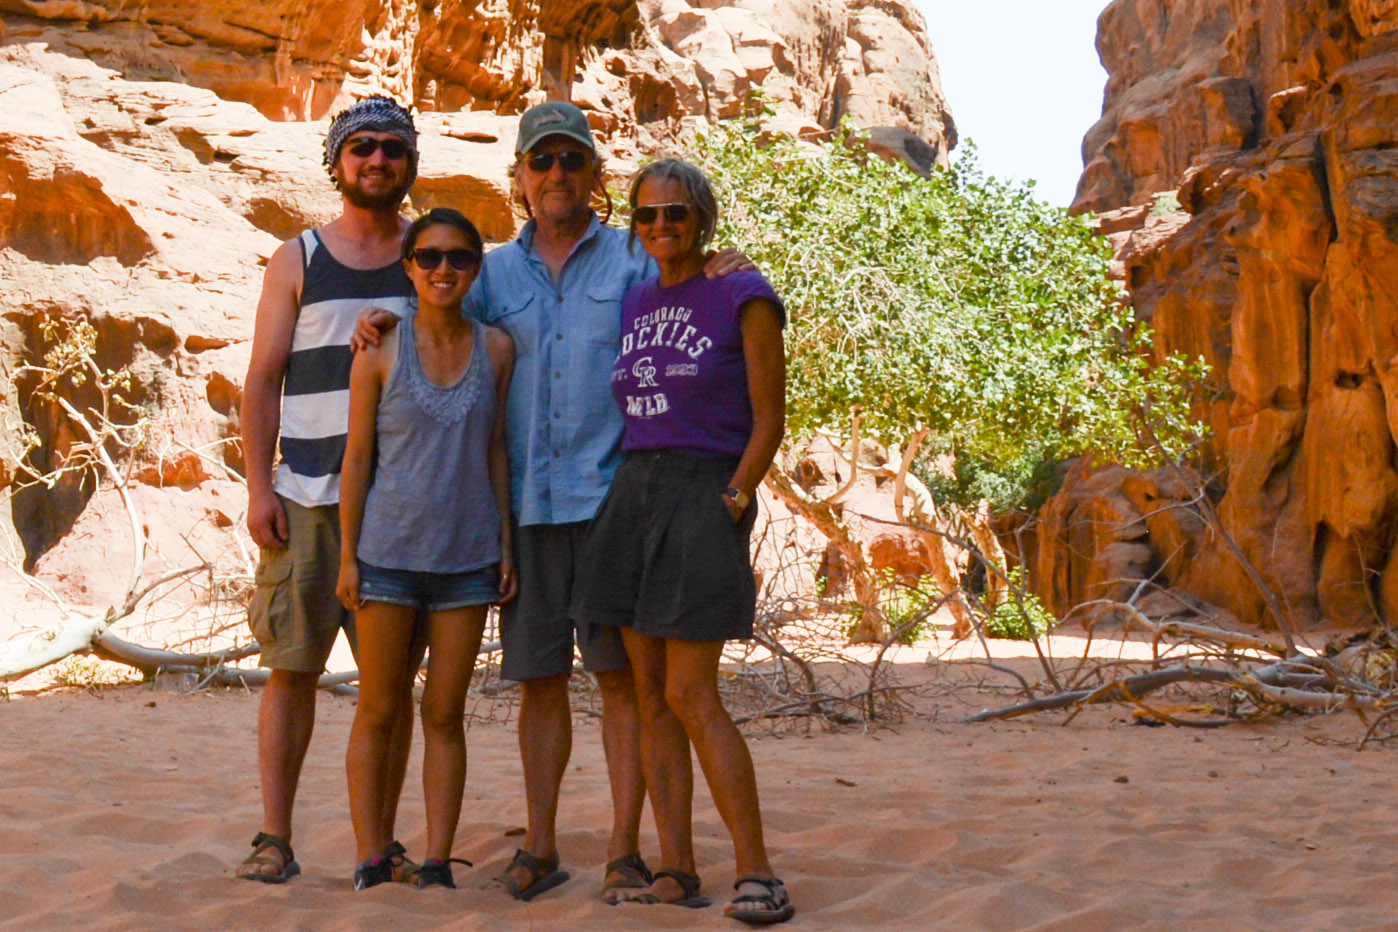 David in Wadi Rum, Jordan with Ben, Li, and Melinda